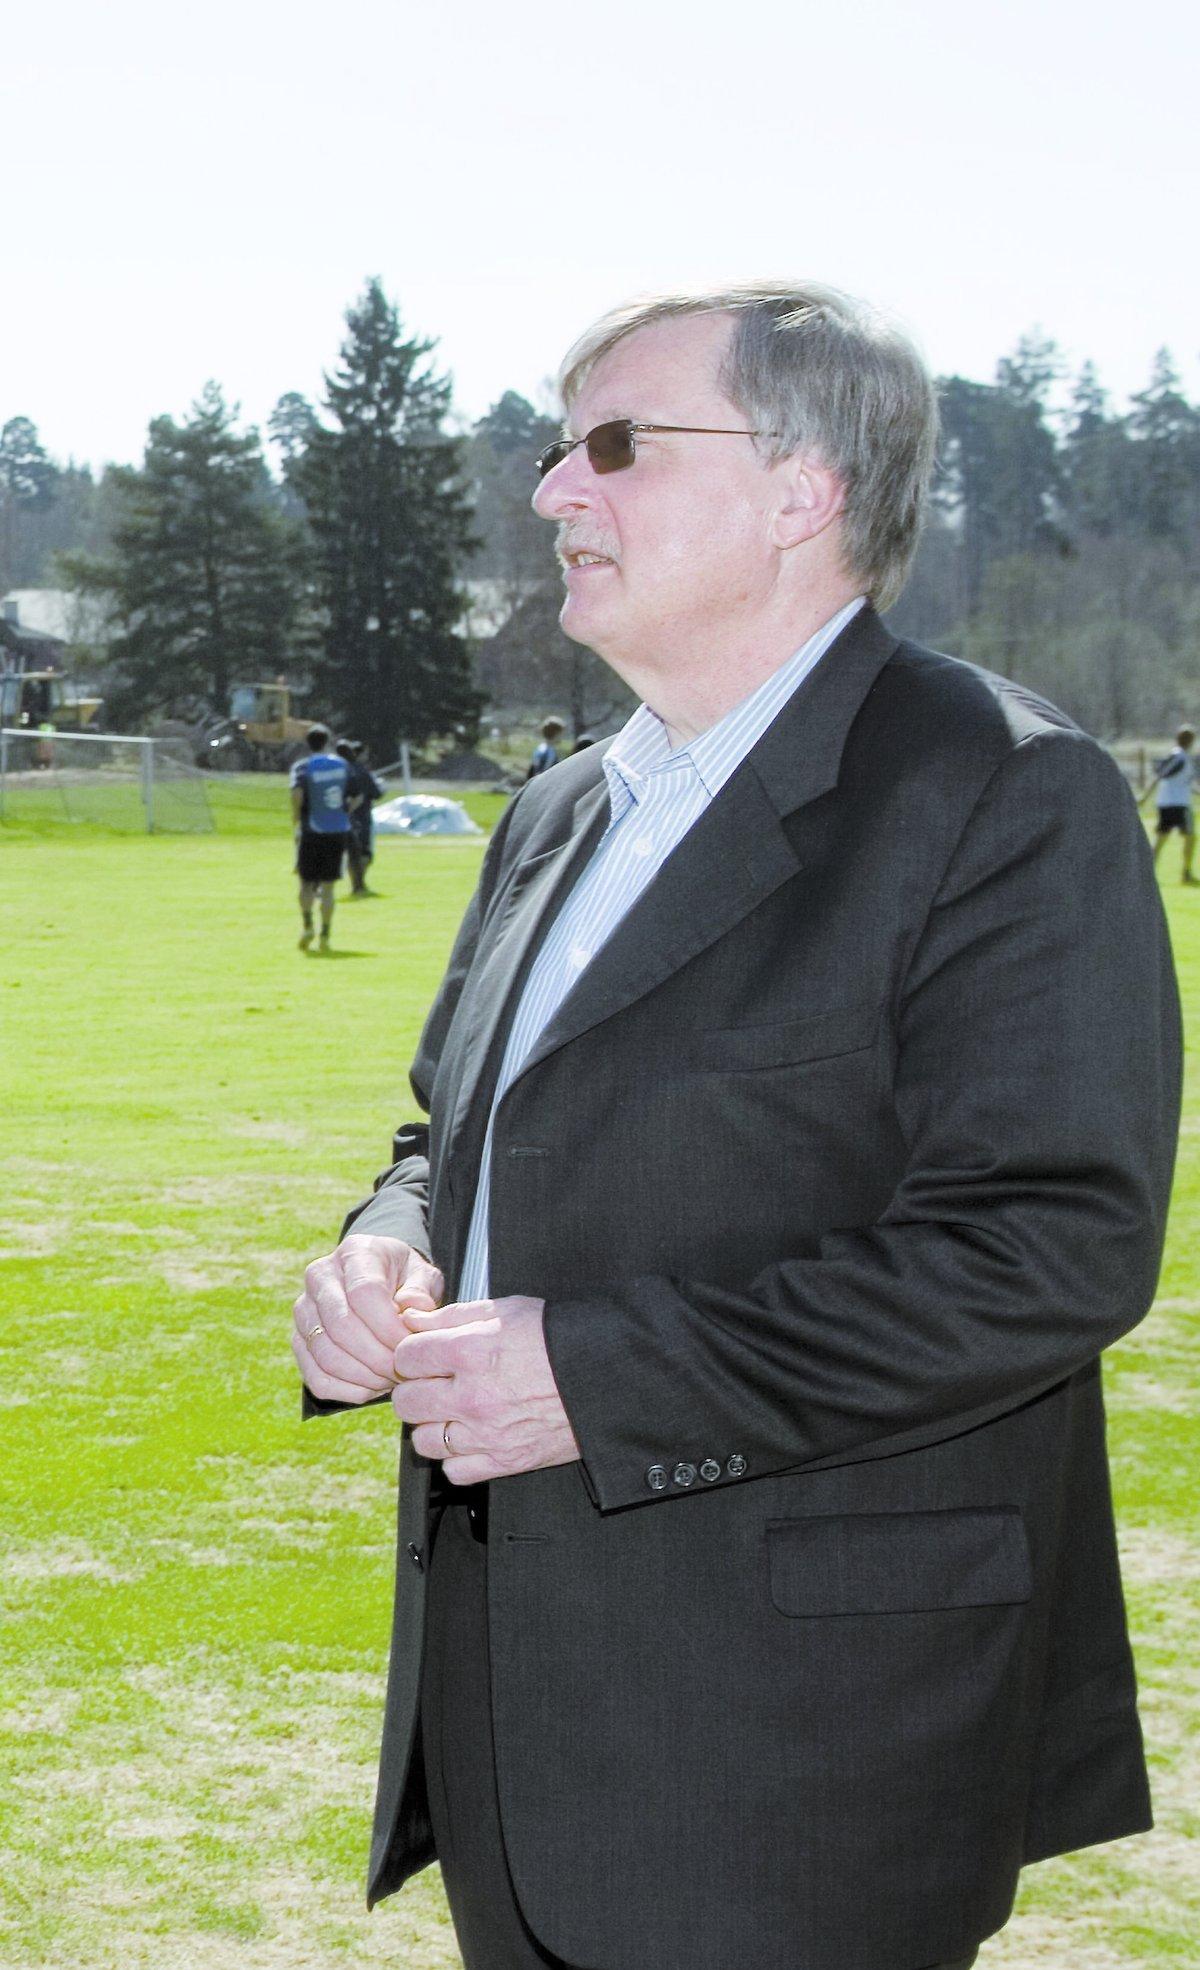 AVGÅR Bosse Lundqvist avgår som ordförande i Djurgården med omedelbar verkan.